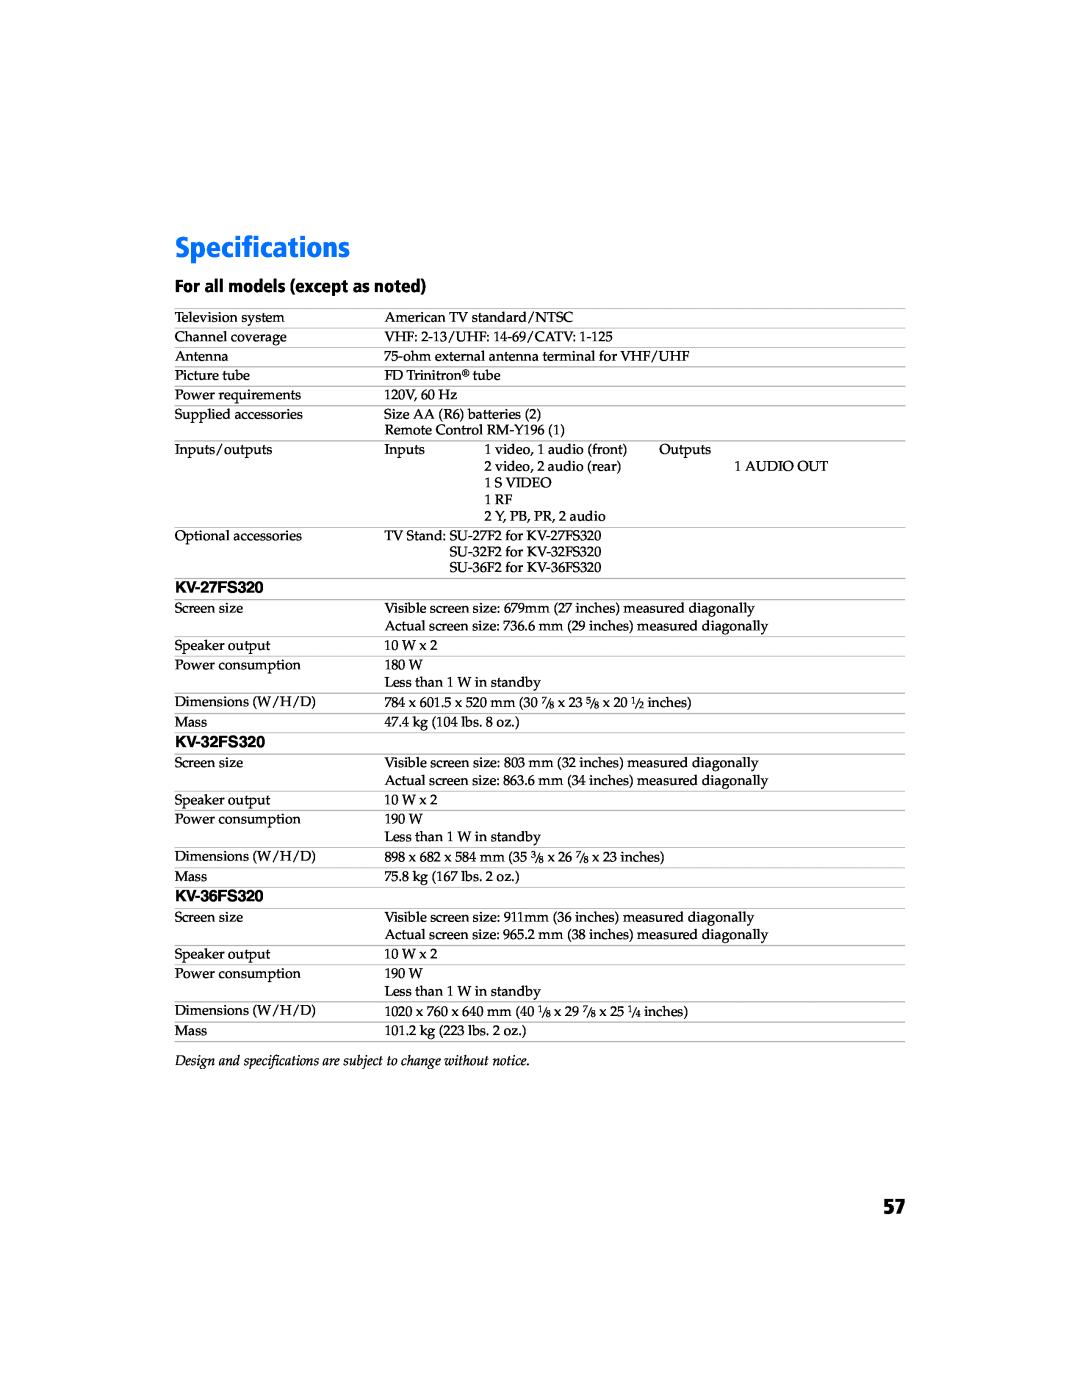 Sony KV 27FS320 manual Specifications, For all models except as noted, KV-27FS320, KV-32FS320, KV-36FS320 